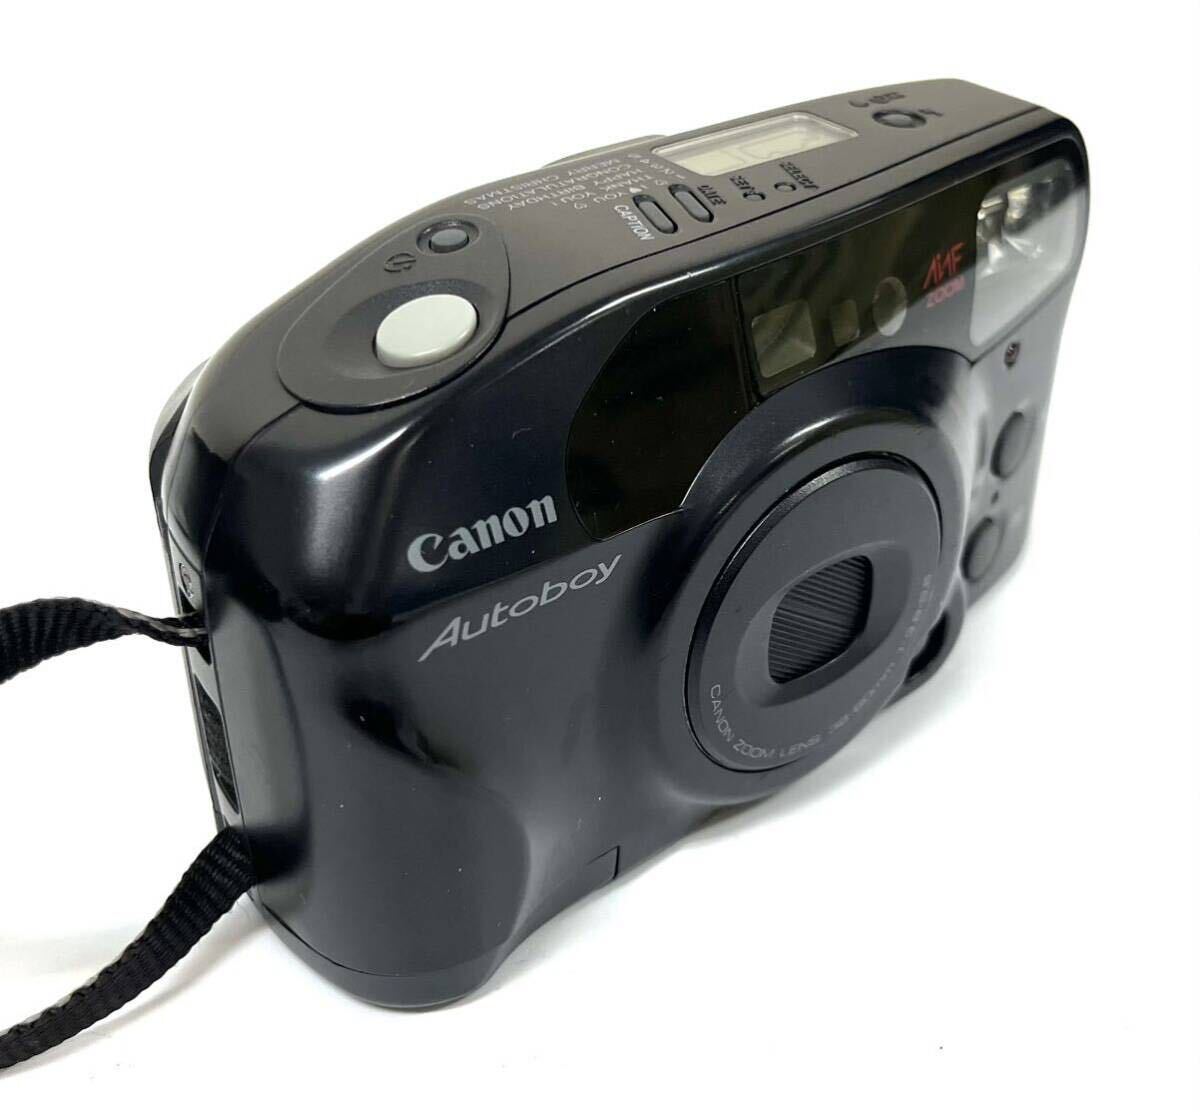 Canon キャノン Autoboy フィルムカメラ コンパクト カメラ 38-60mm 1:3.8-5.6 0318②_画像3